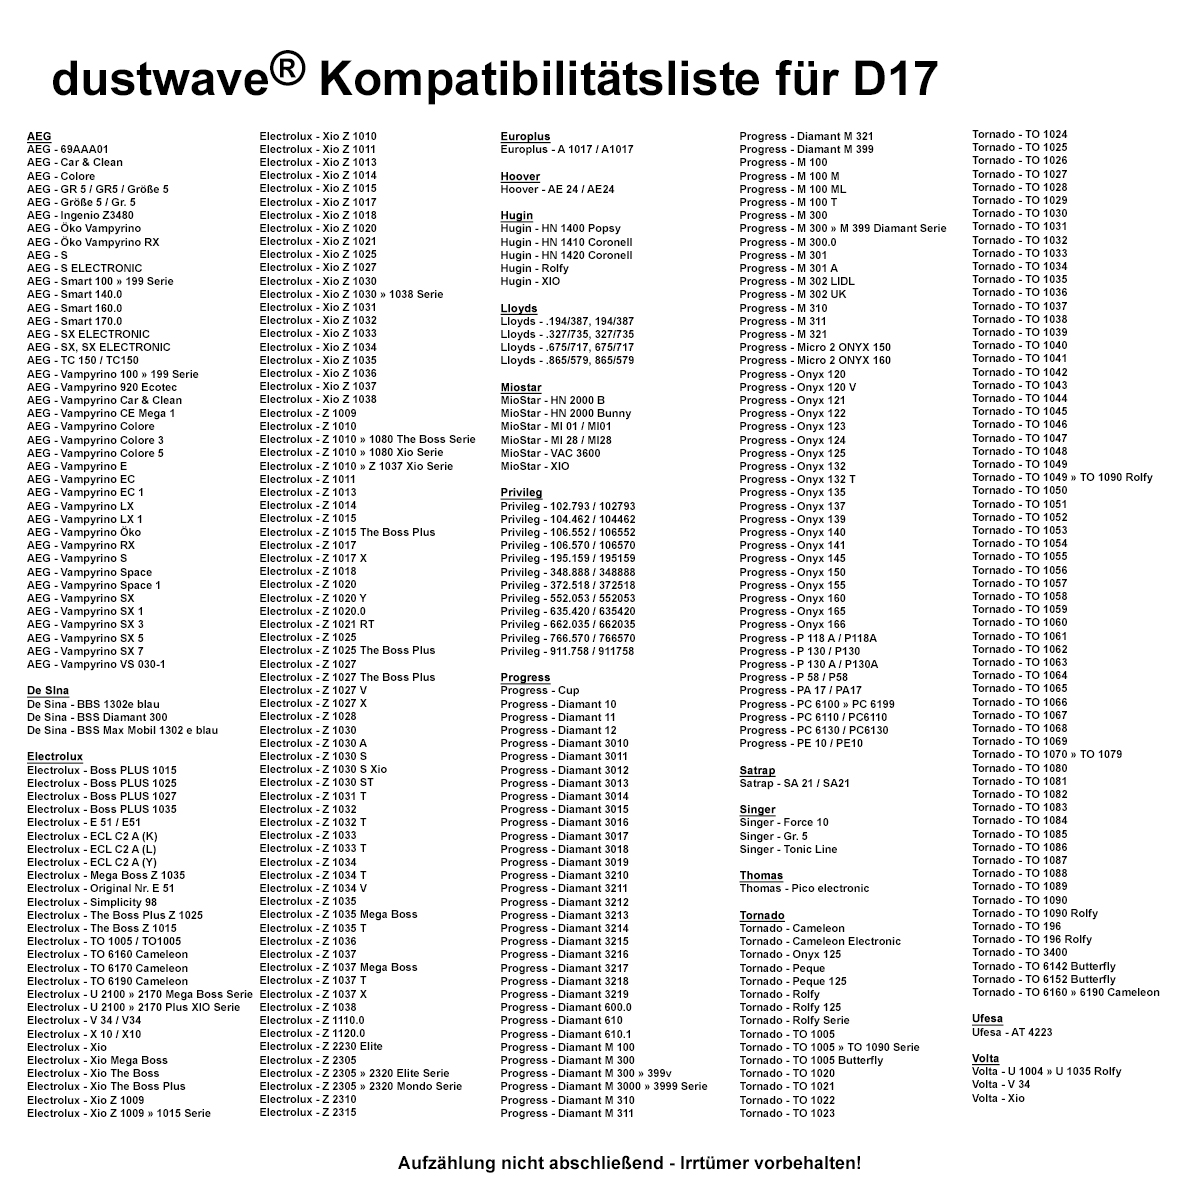 Dustwave® Premium 20 Staubsaugerbeutel für AEG Smart 170.0 - hocheffizient mit Hygieneverschluss - Made in Germany